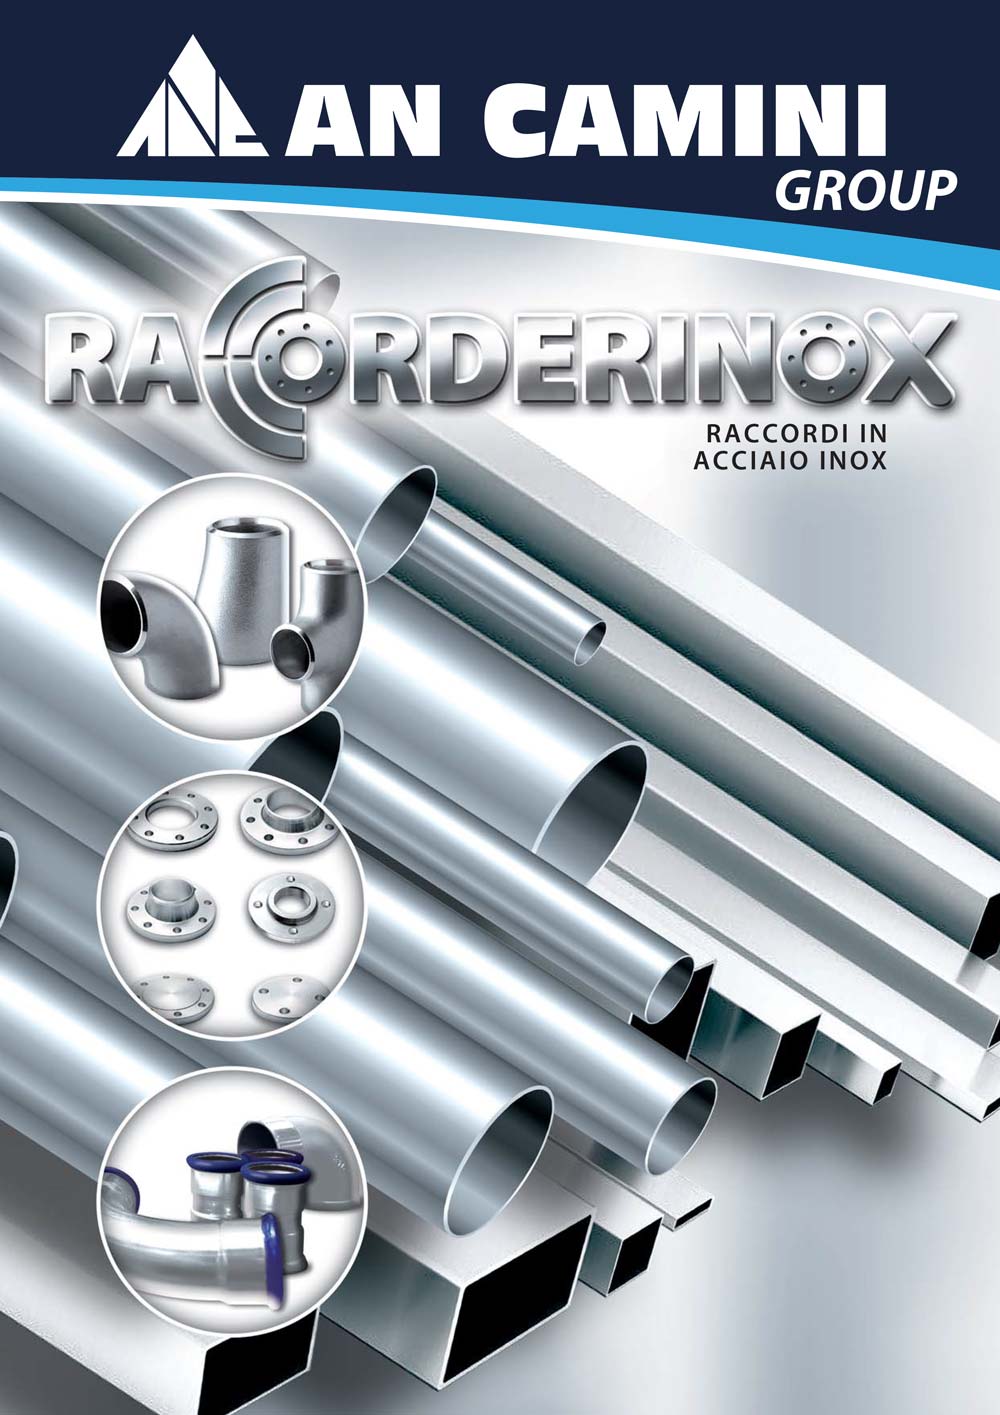 RACCORDERINOX - Raccordi e tubazioni in acciaio inox 